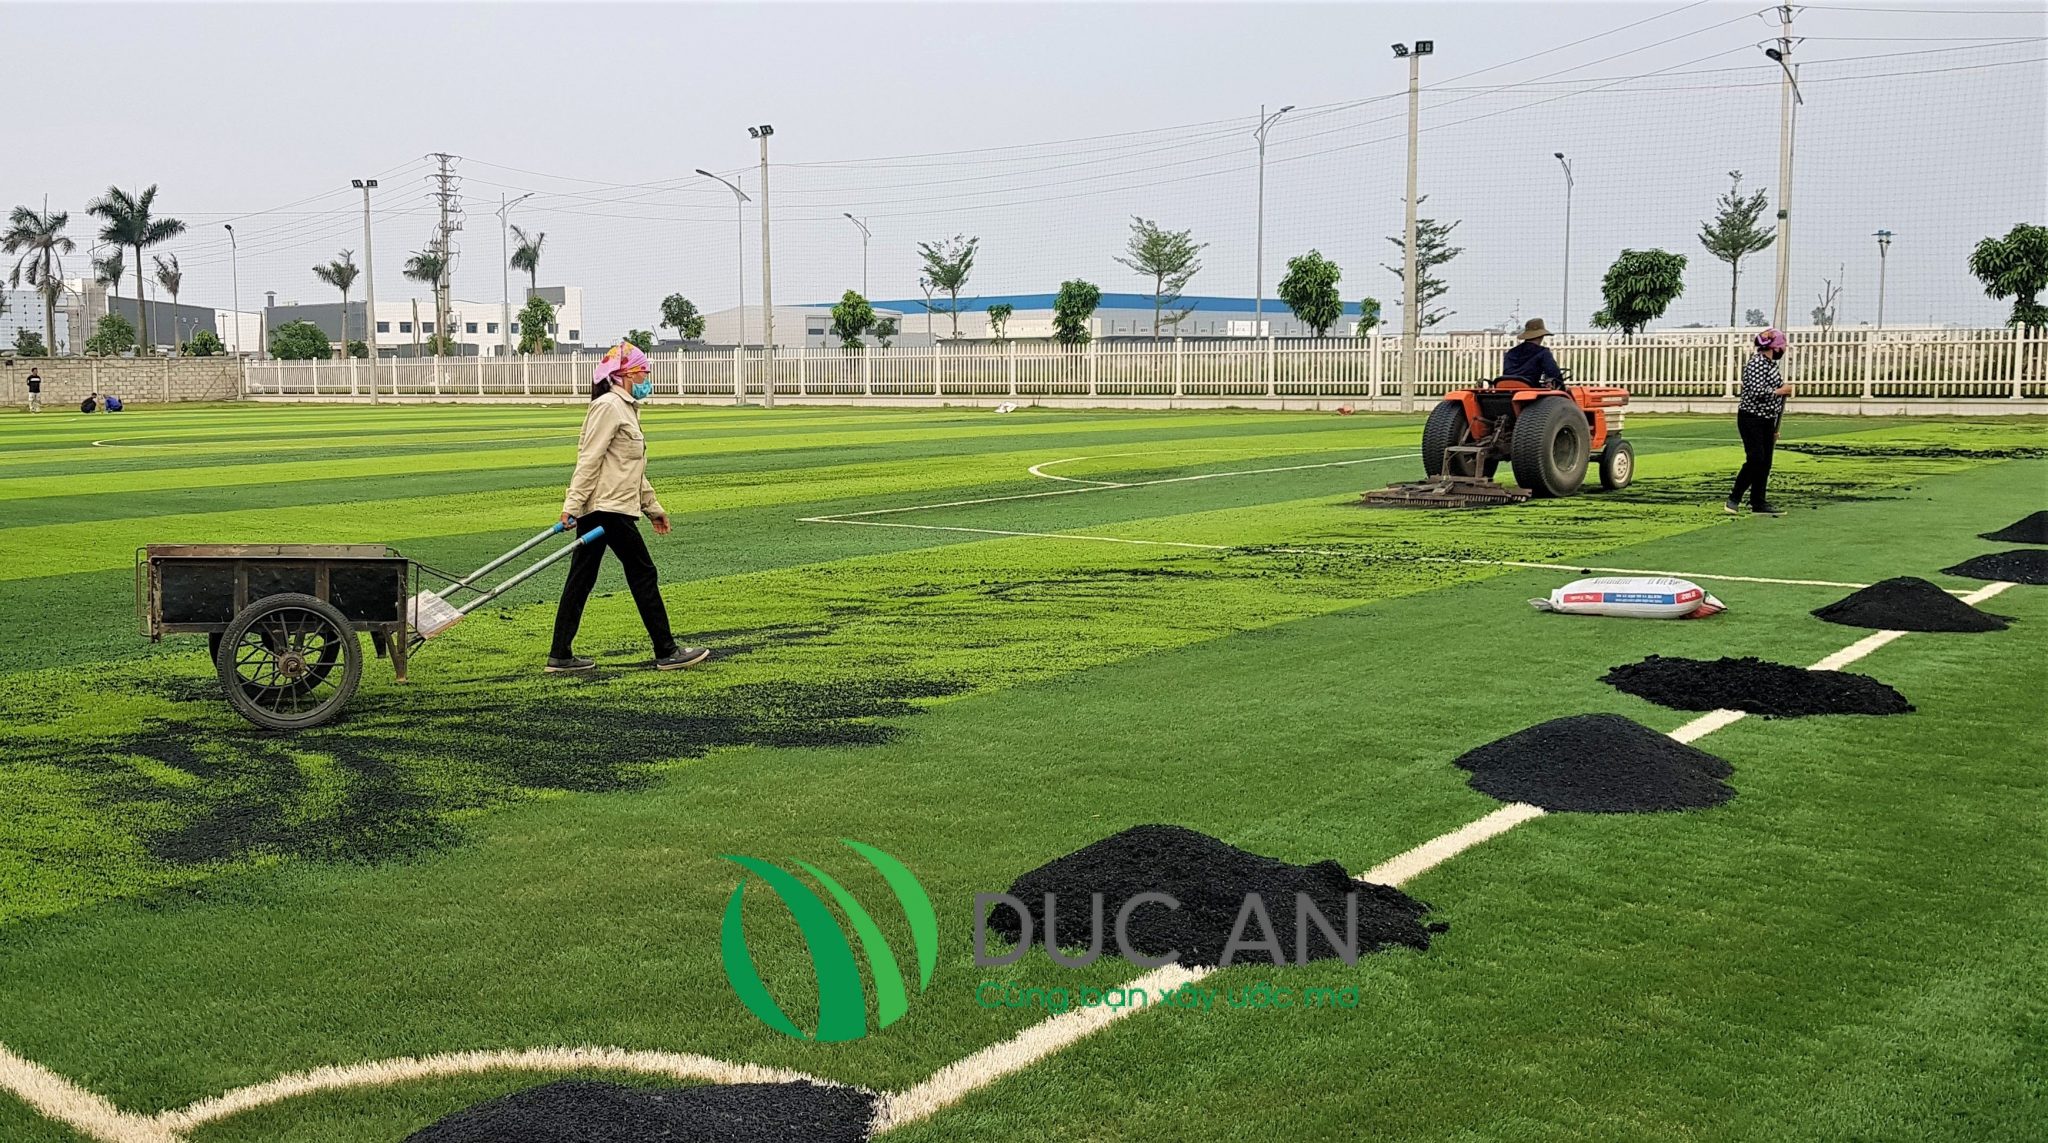 Dự án sân bóng đá cỏ nhân tạo tại công ty TNHH Autonics VNM – Hà Nam